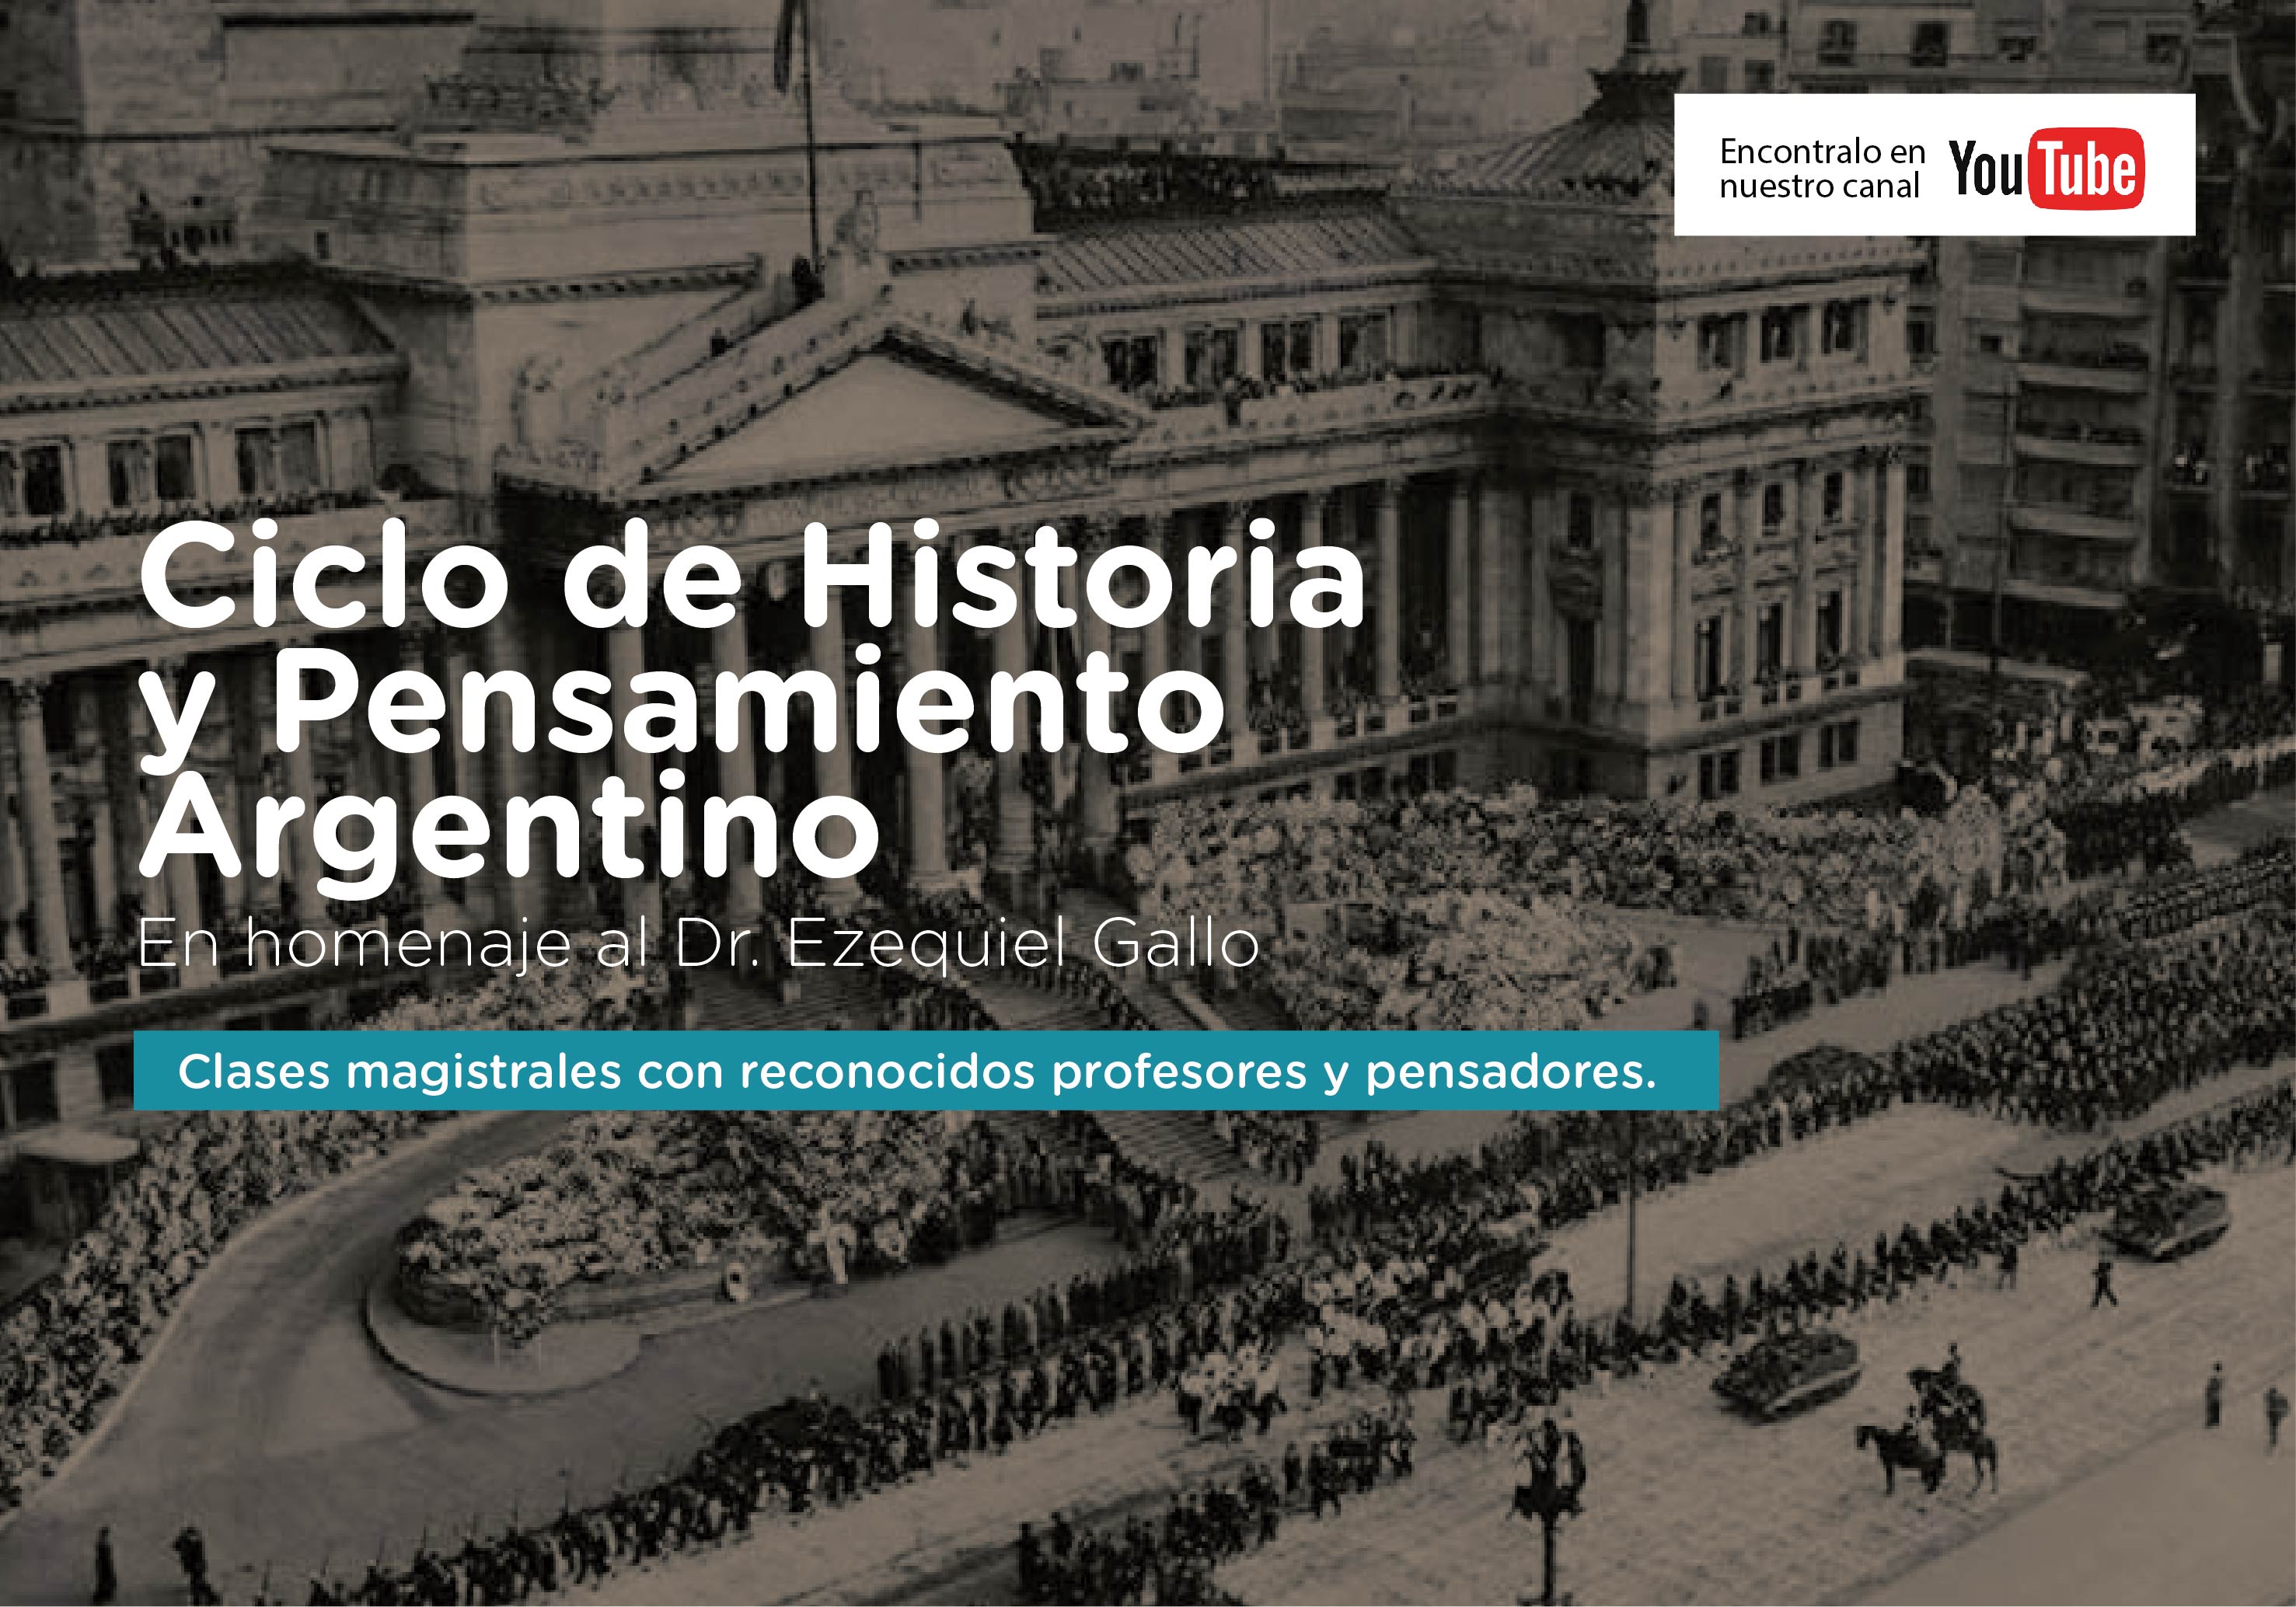 ¡Muy buenas noticias! Ya podés ver el Ciclo de Historia y Pensamiento Argentino en nuestro canal de YouTube.